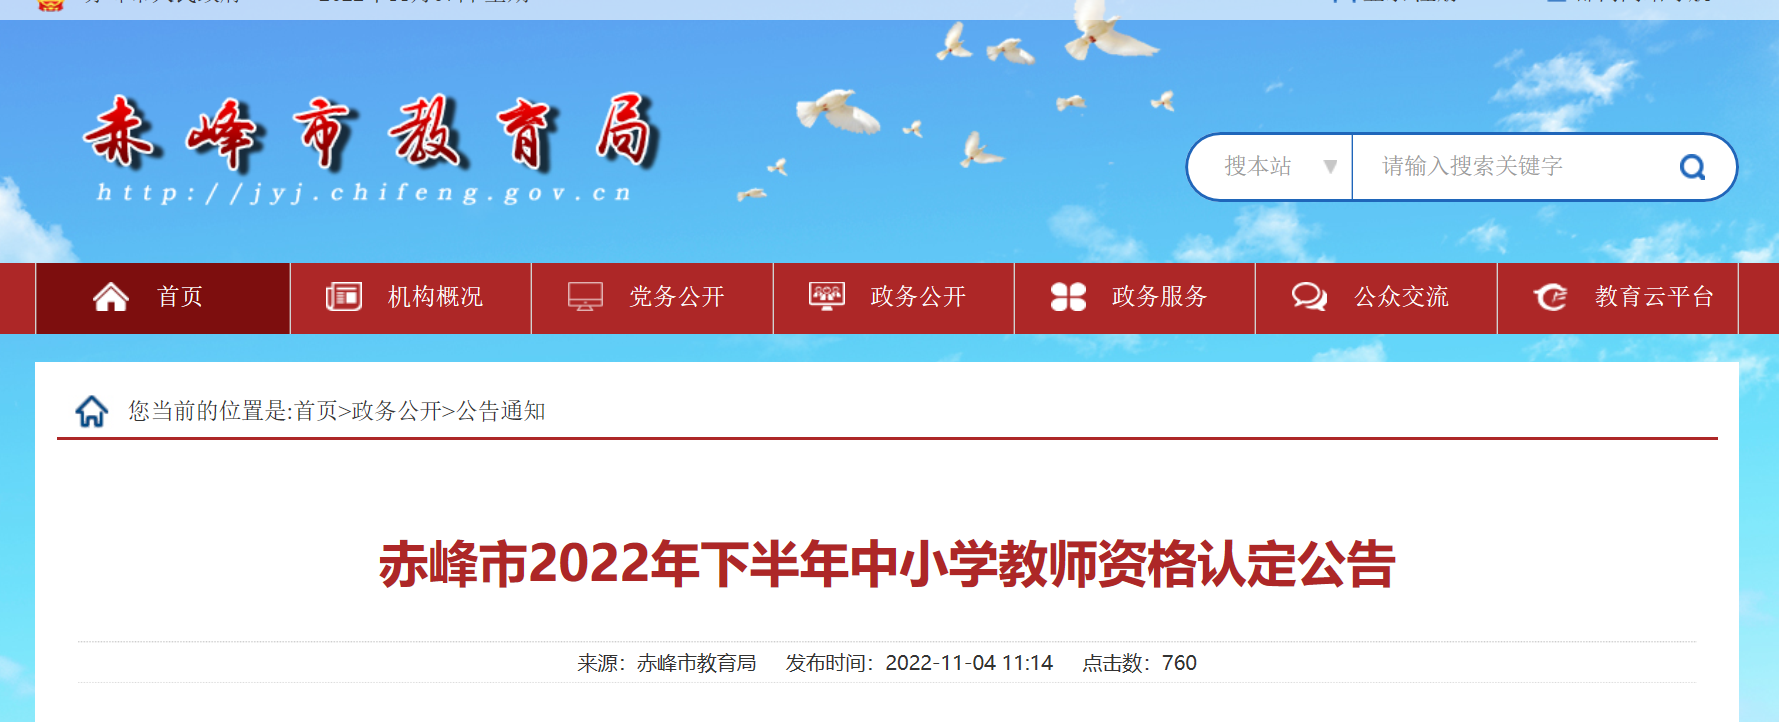 2022年下半年内蒙古赤峰中小学教师资格认定公告